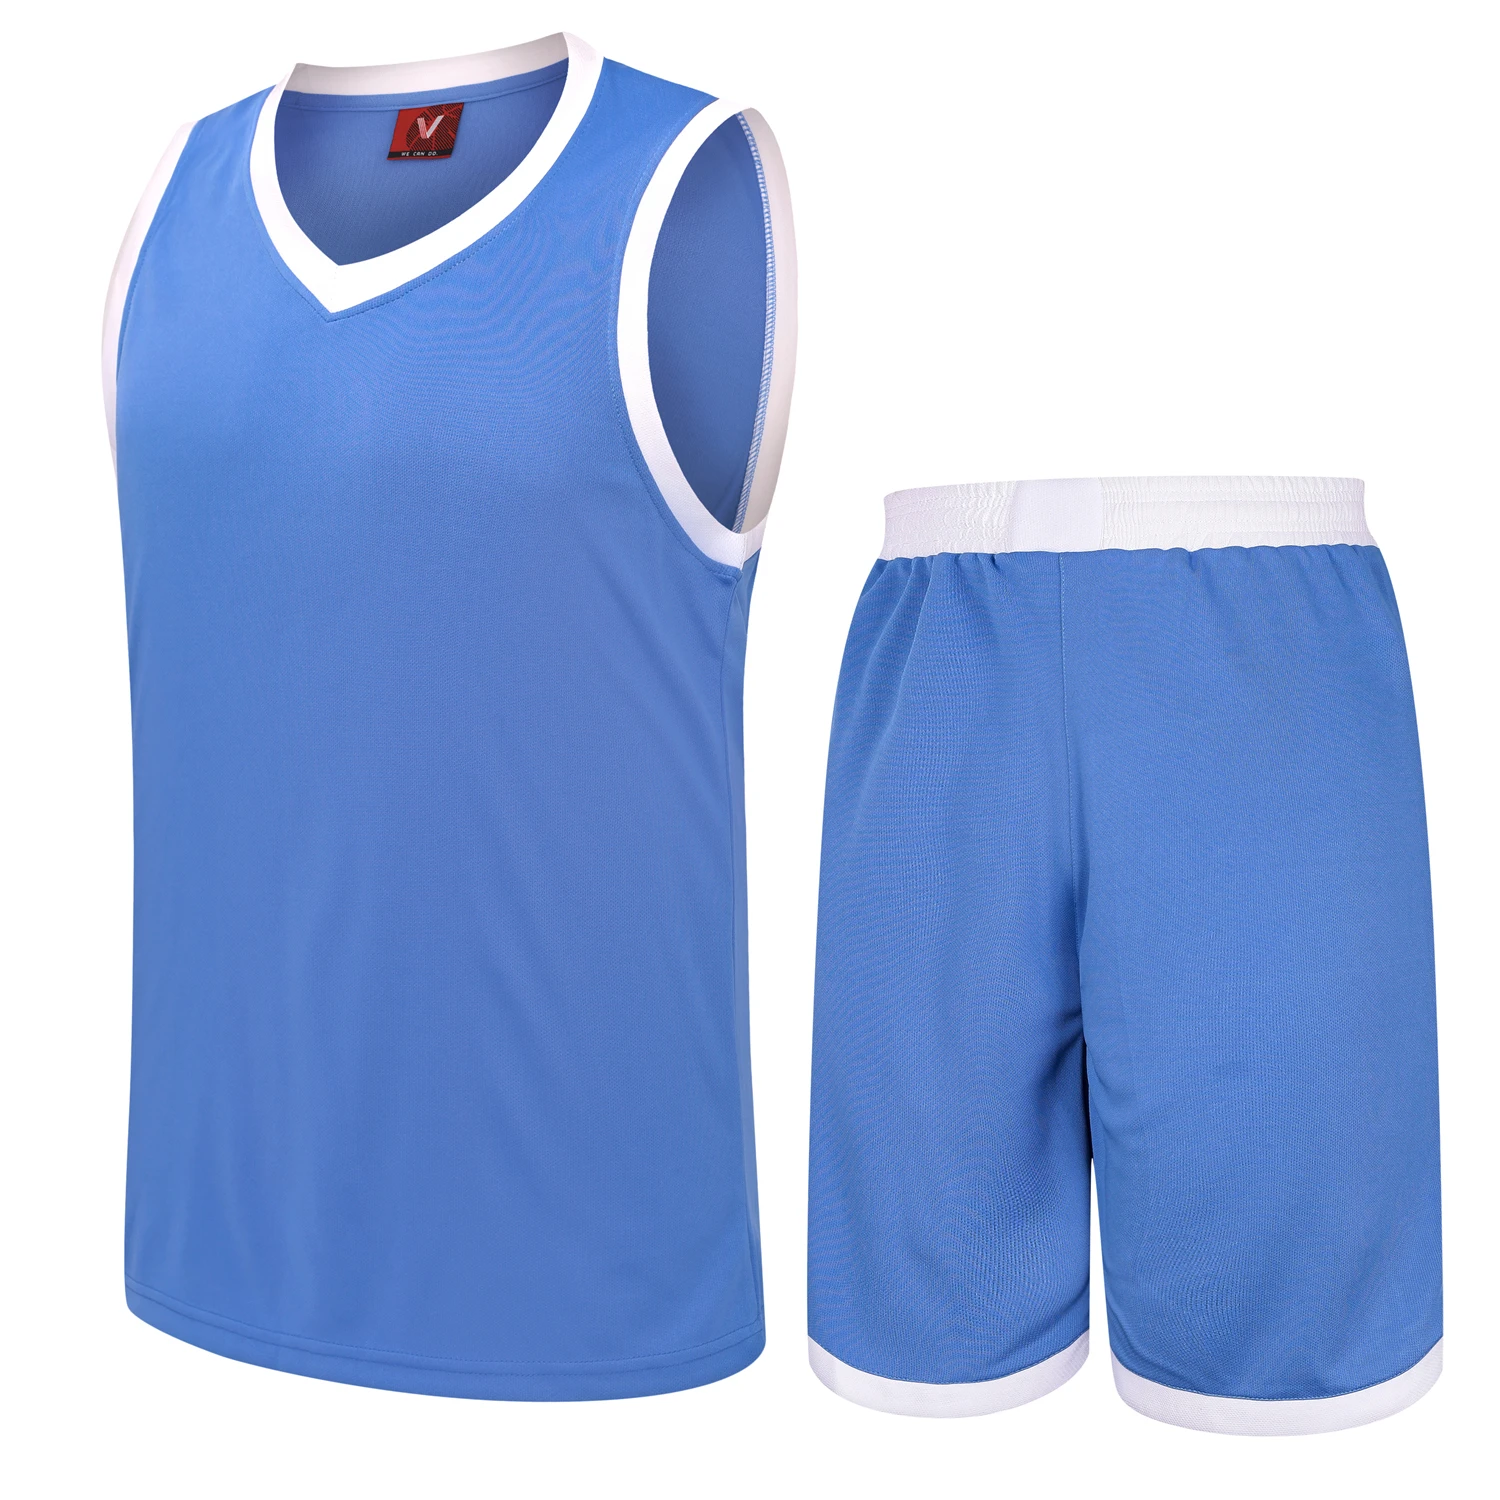 7 цветов детские спортивные комплекты Детские баскетбольные майки дышащая ткань футболка без рукавов тренировочная одежда тренажерный зал фитнес - Цвет: Sky blue